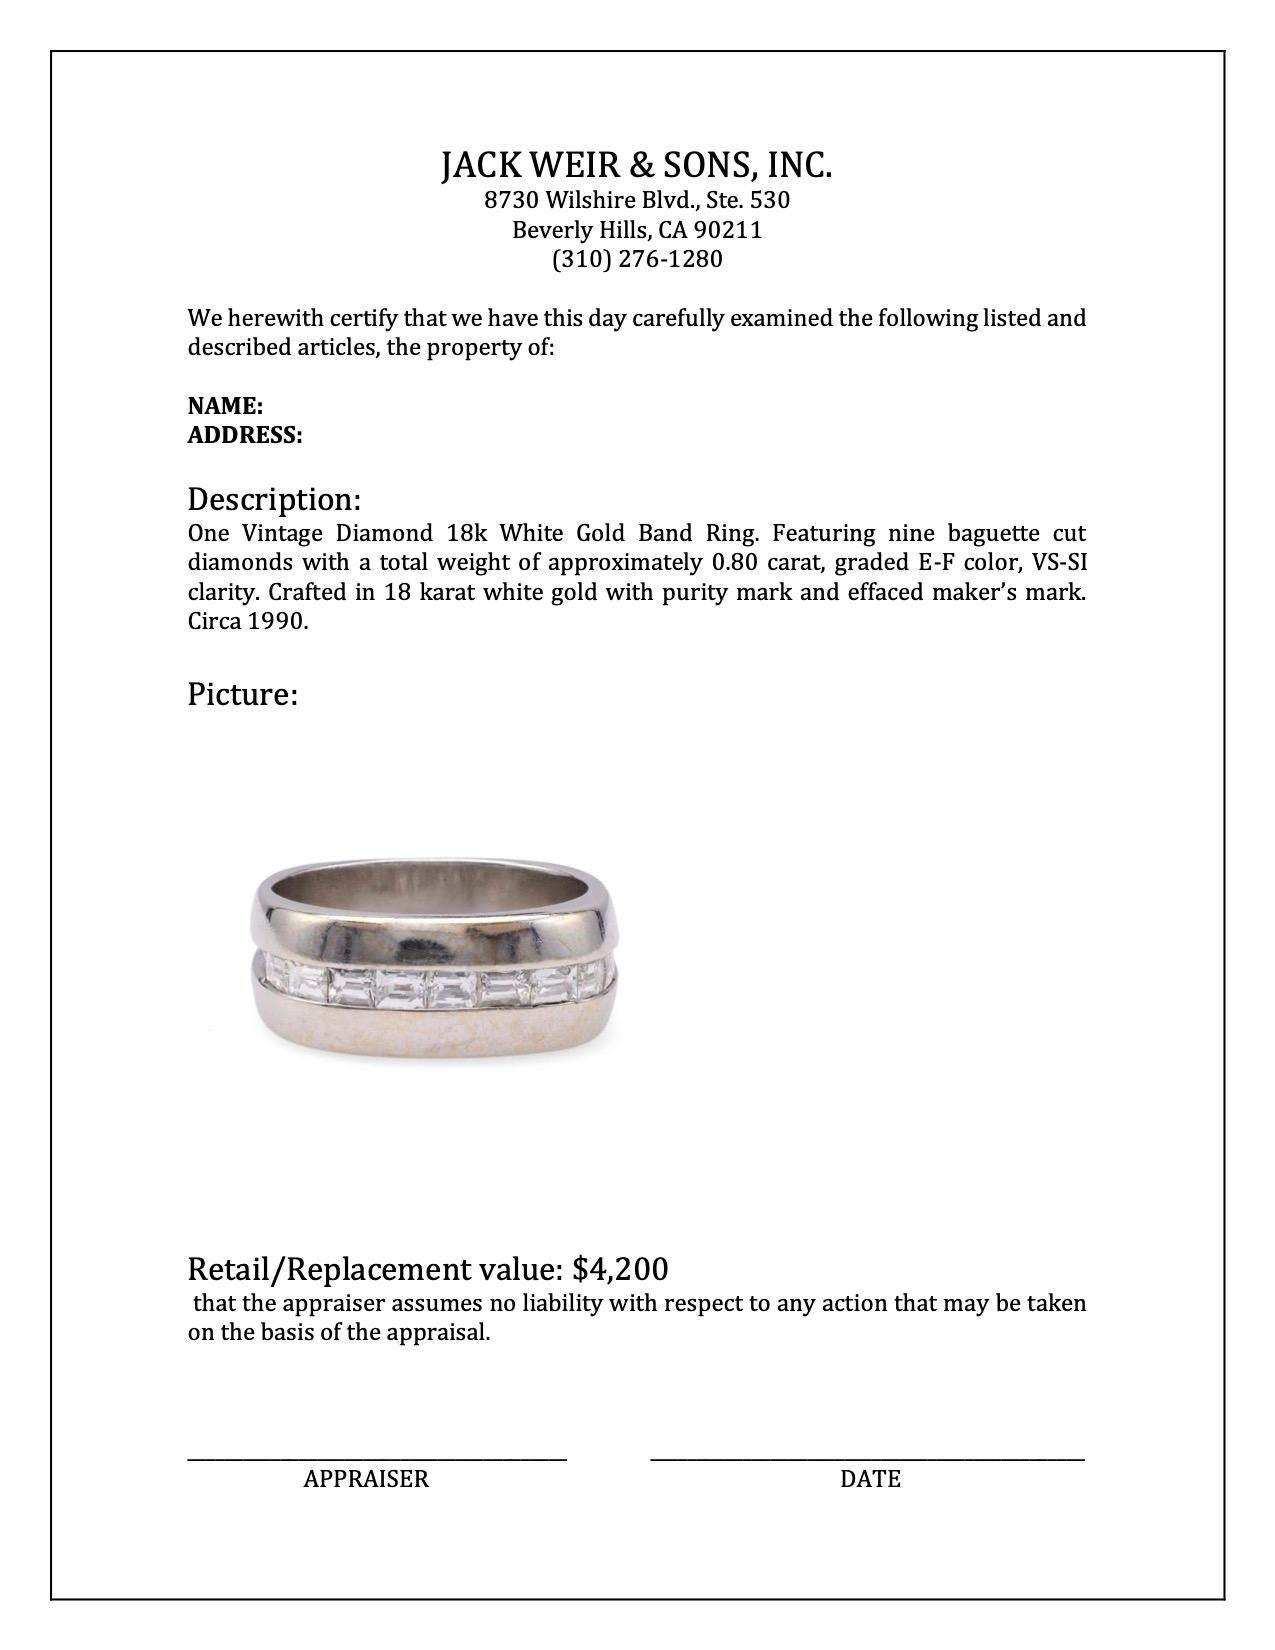 Women's or Men's Vintage Diamond 18k White Gold Band Ring For Sale